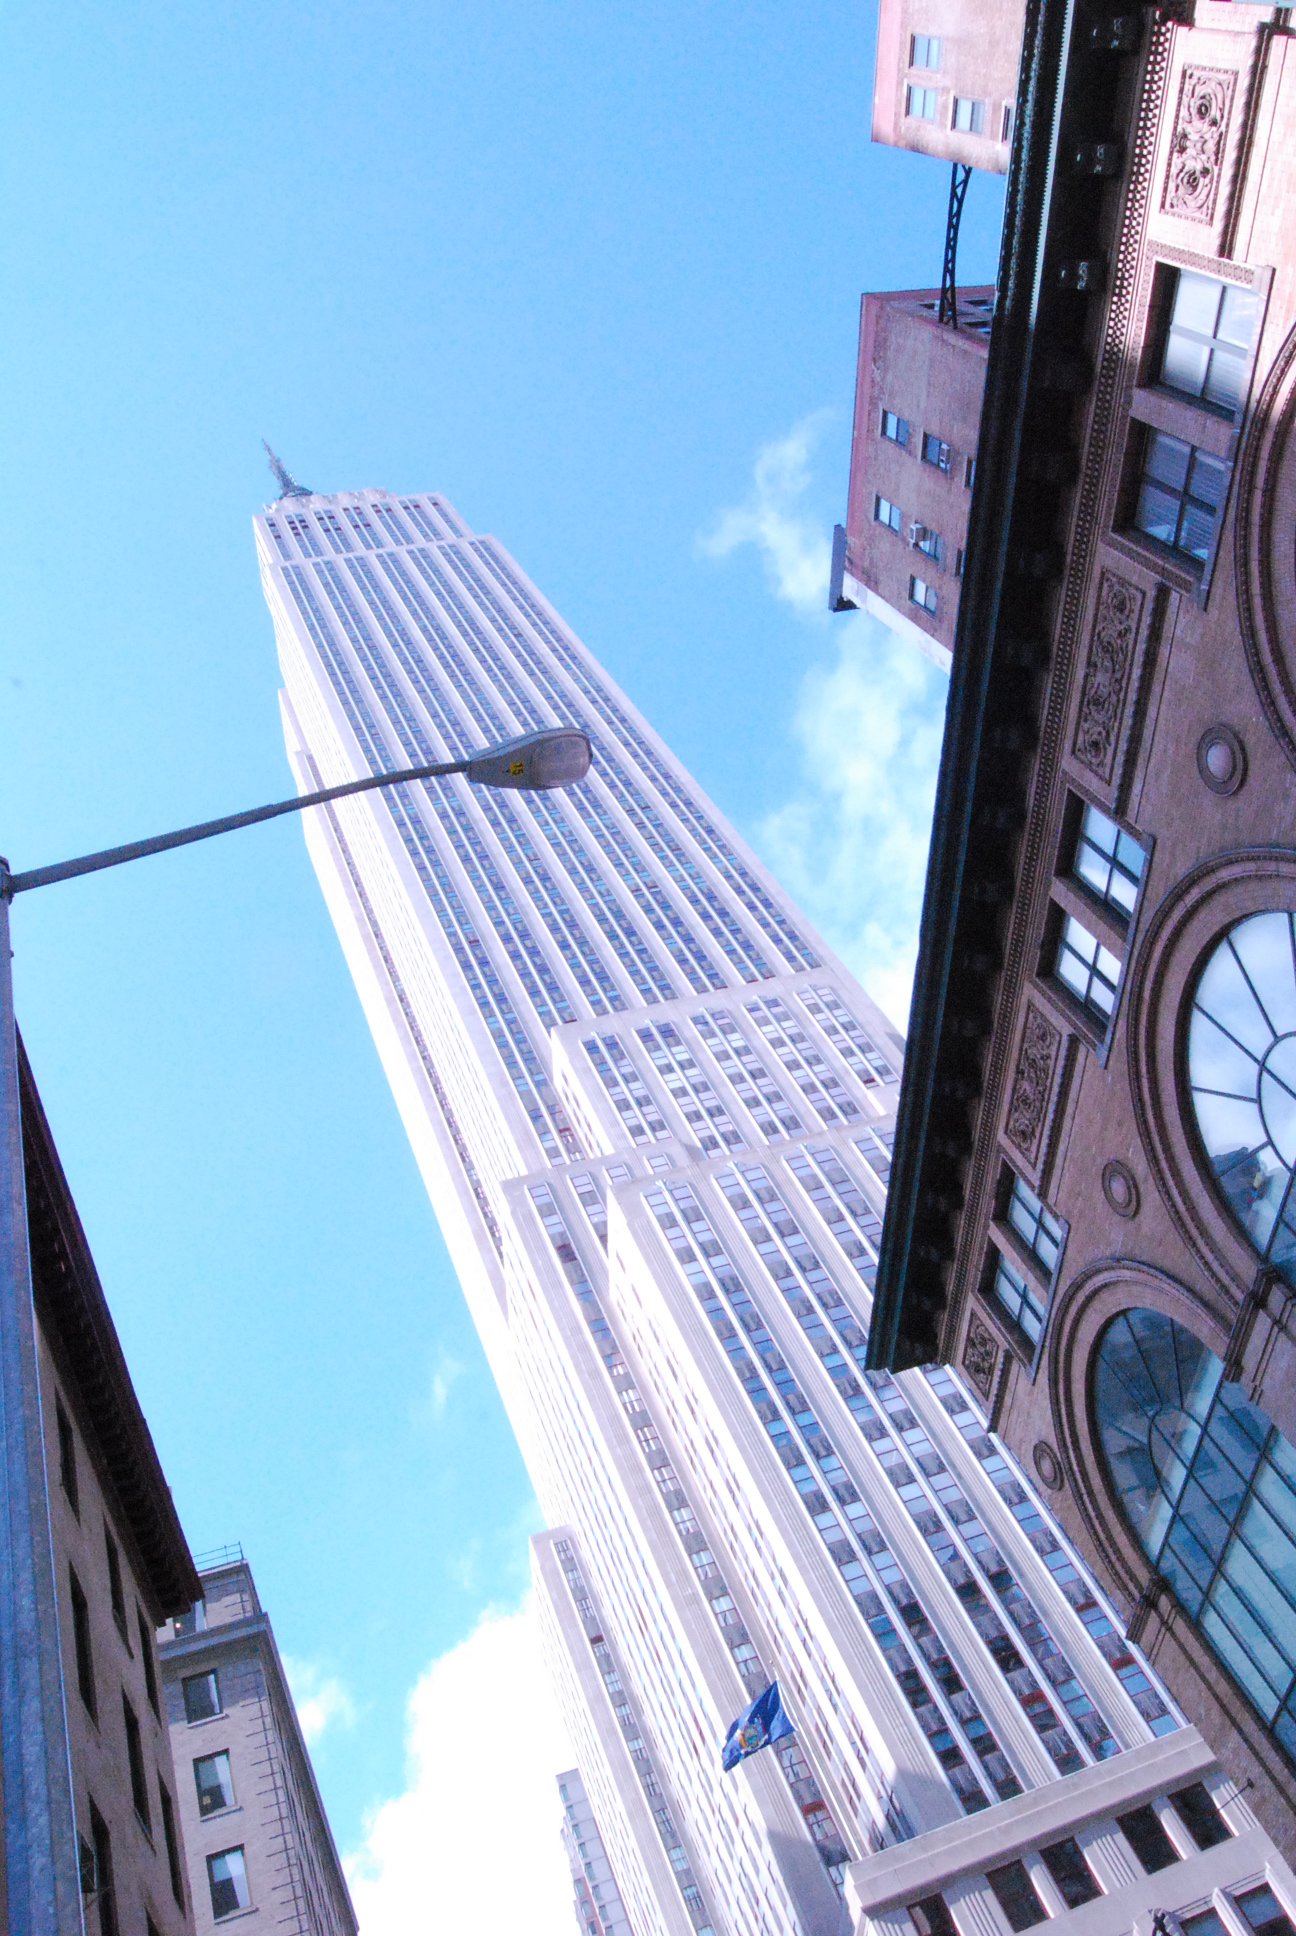 Empire State Building - как всегда красавец Импаер Стейт билдинг. Построенный как причал для дирижаблей в тридцатые годы, используется как офисное здание и площадка обозрения (по моему с РОкфеооер Цента всетаки вид лучше и места больше и современней. Всем советую именно Рокфеллер Центр).